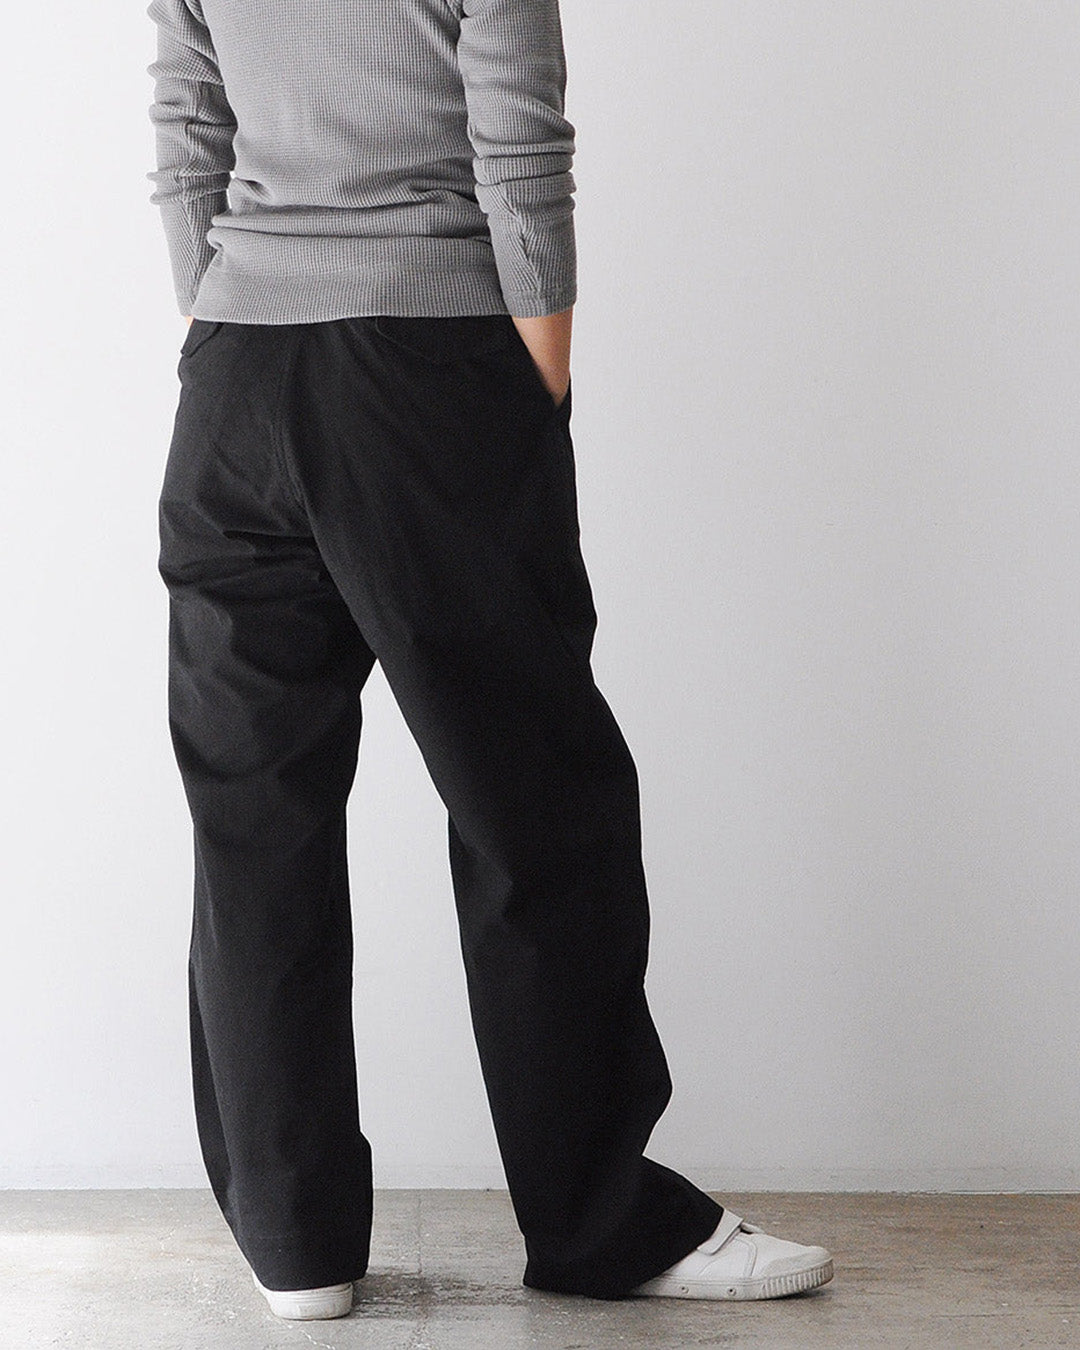 TUKI field trousers / black / solid twill / size0,1,2